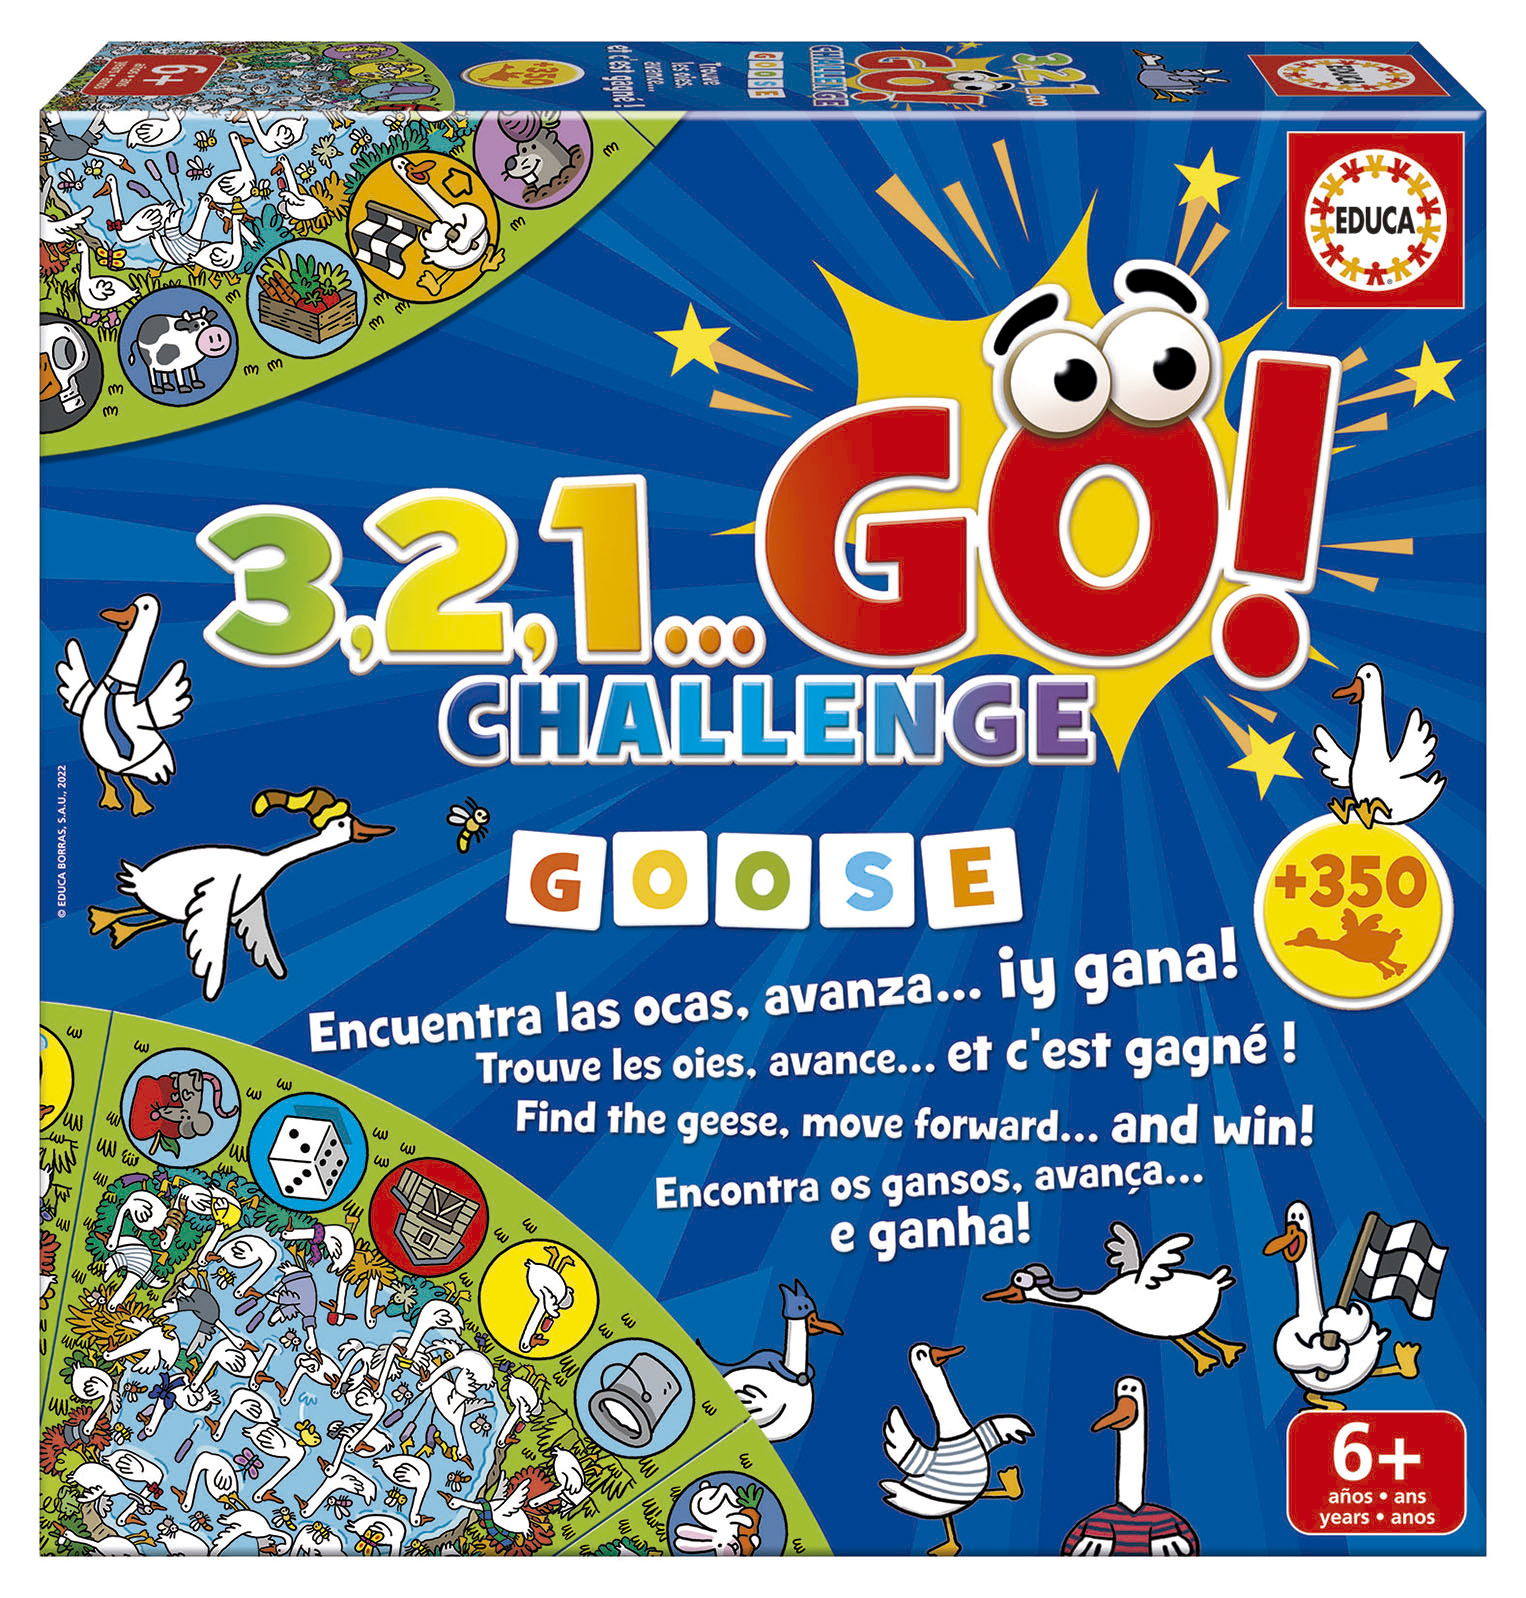 3,2,1… GO! Challenge Goose